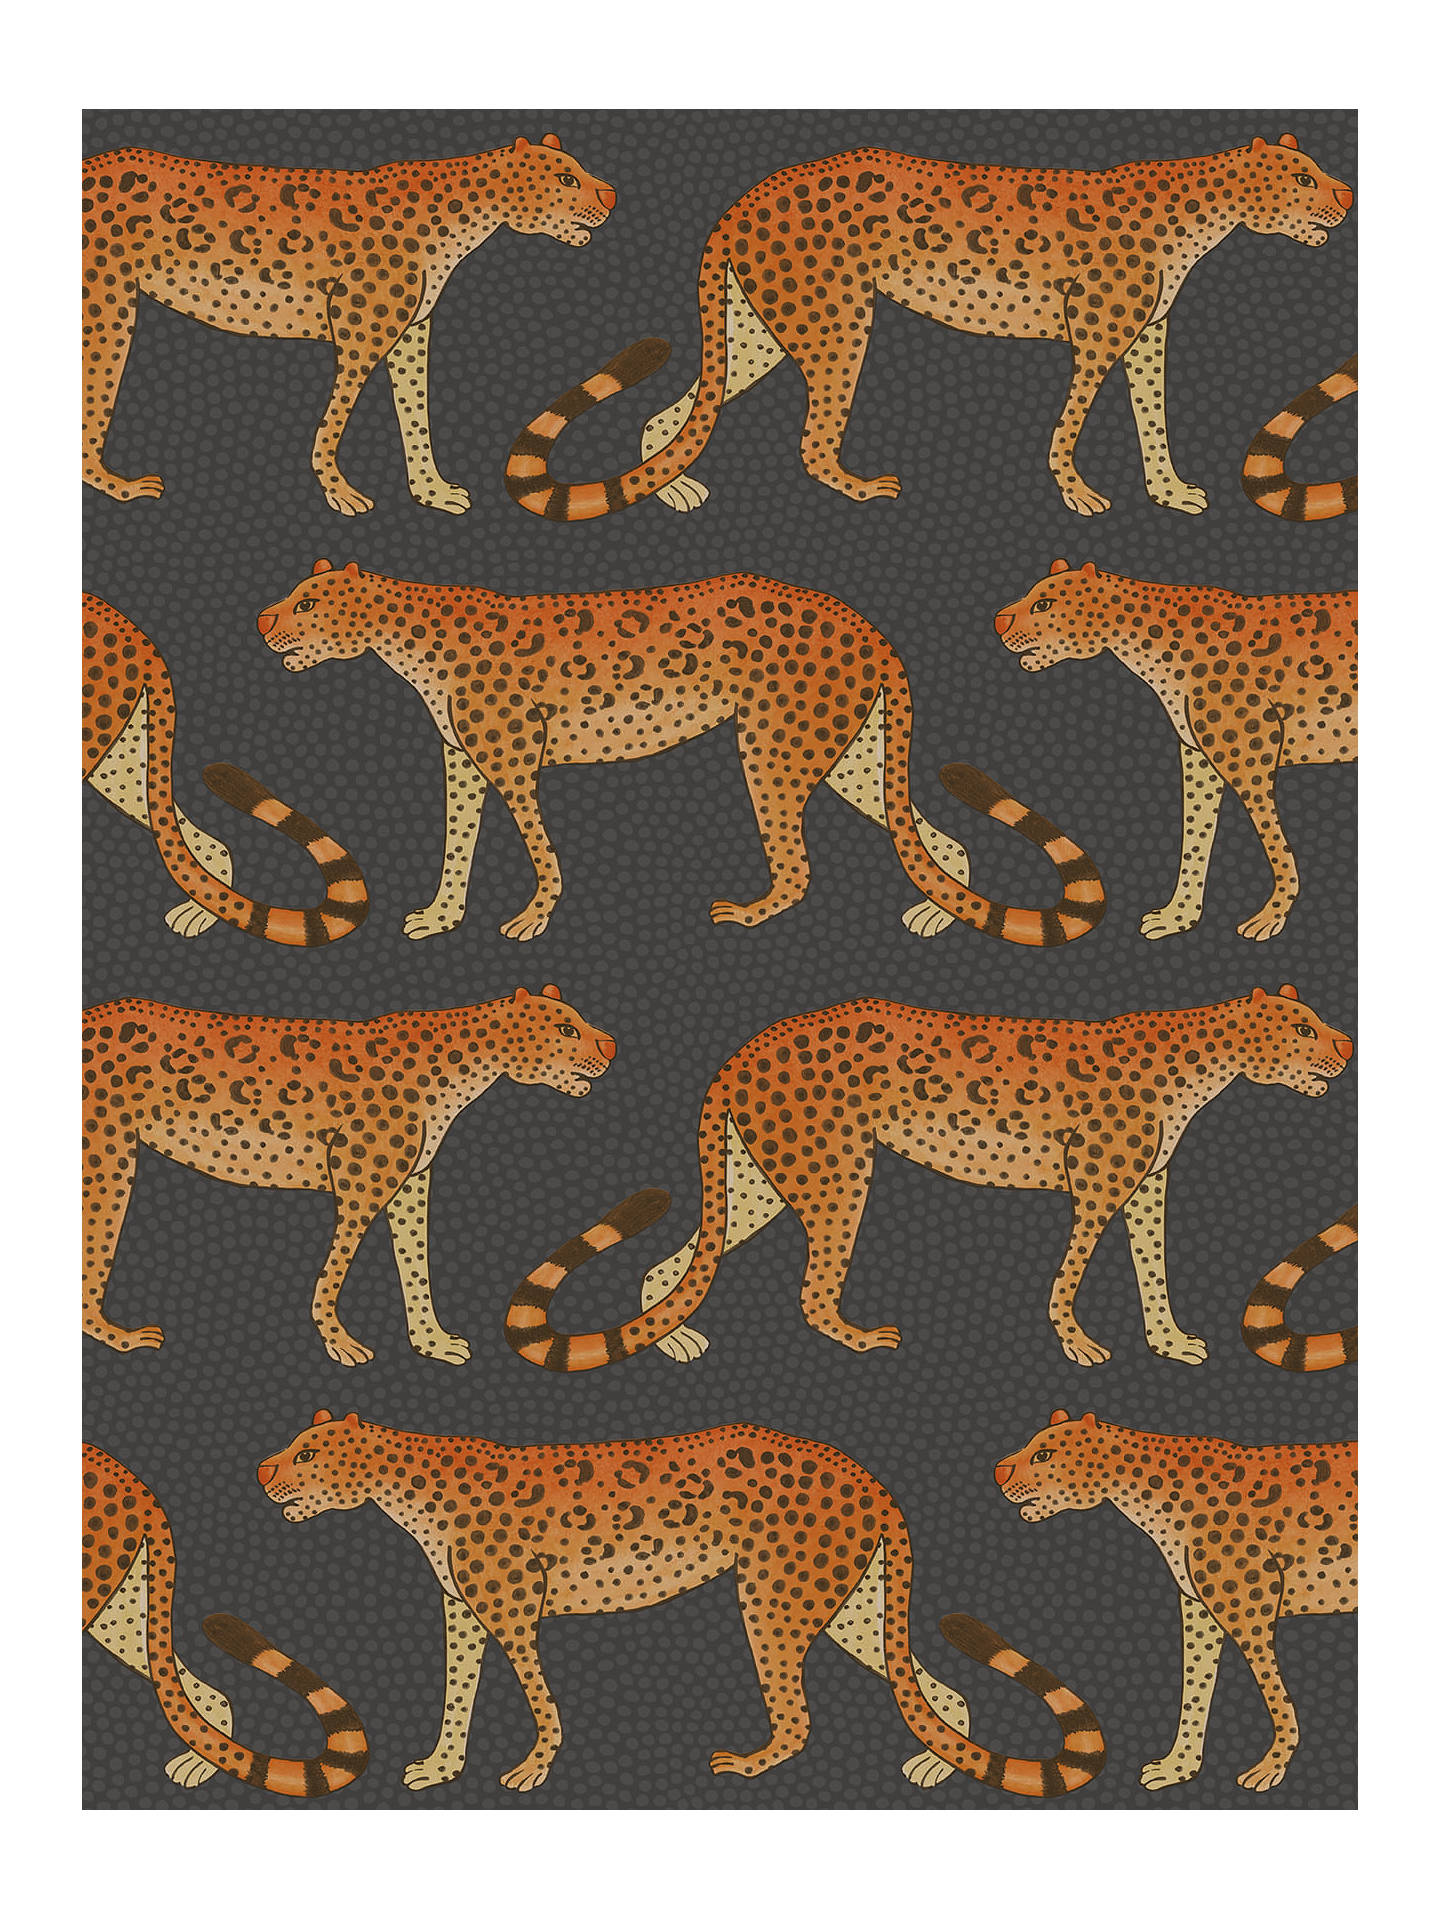 Buy Cole & Son Leopard Walk Wallpaper, 109/2008 Online - مطعم بيلو , HD Wallpaper & Backgrounds